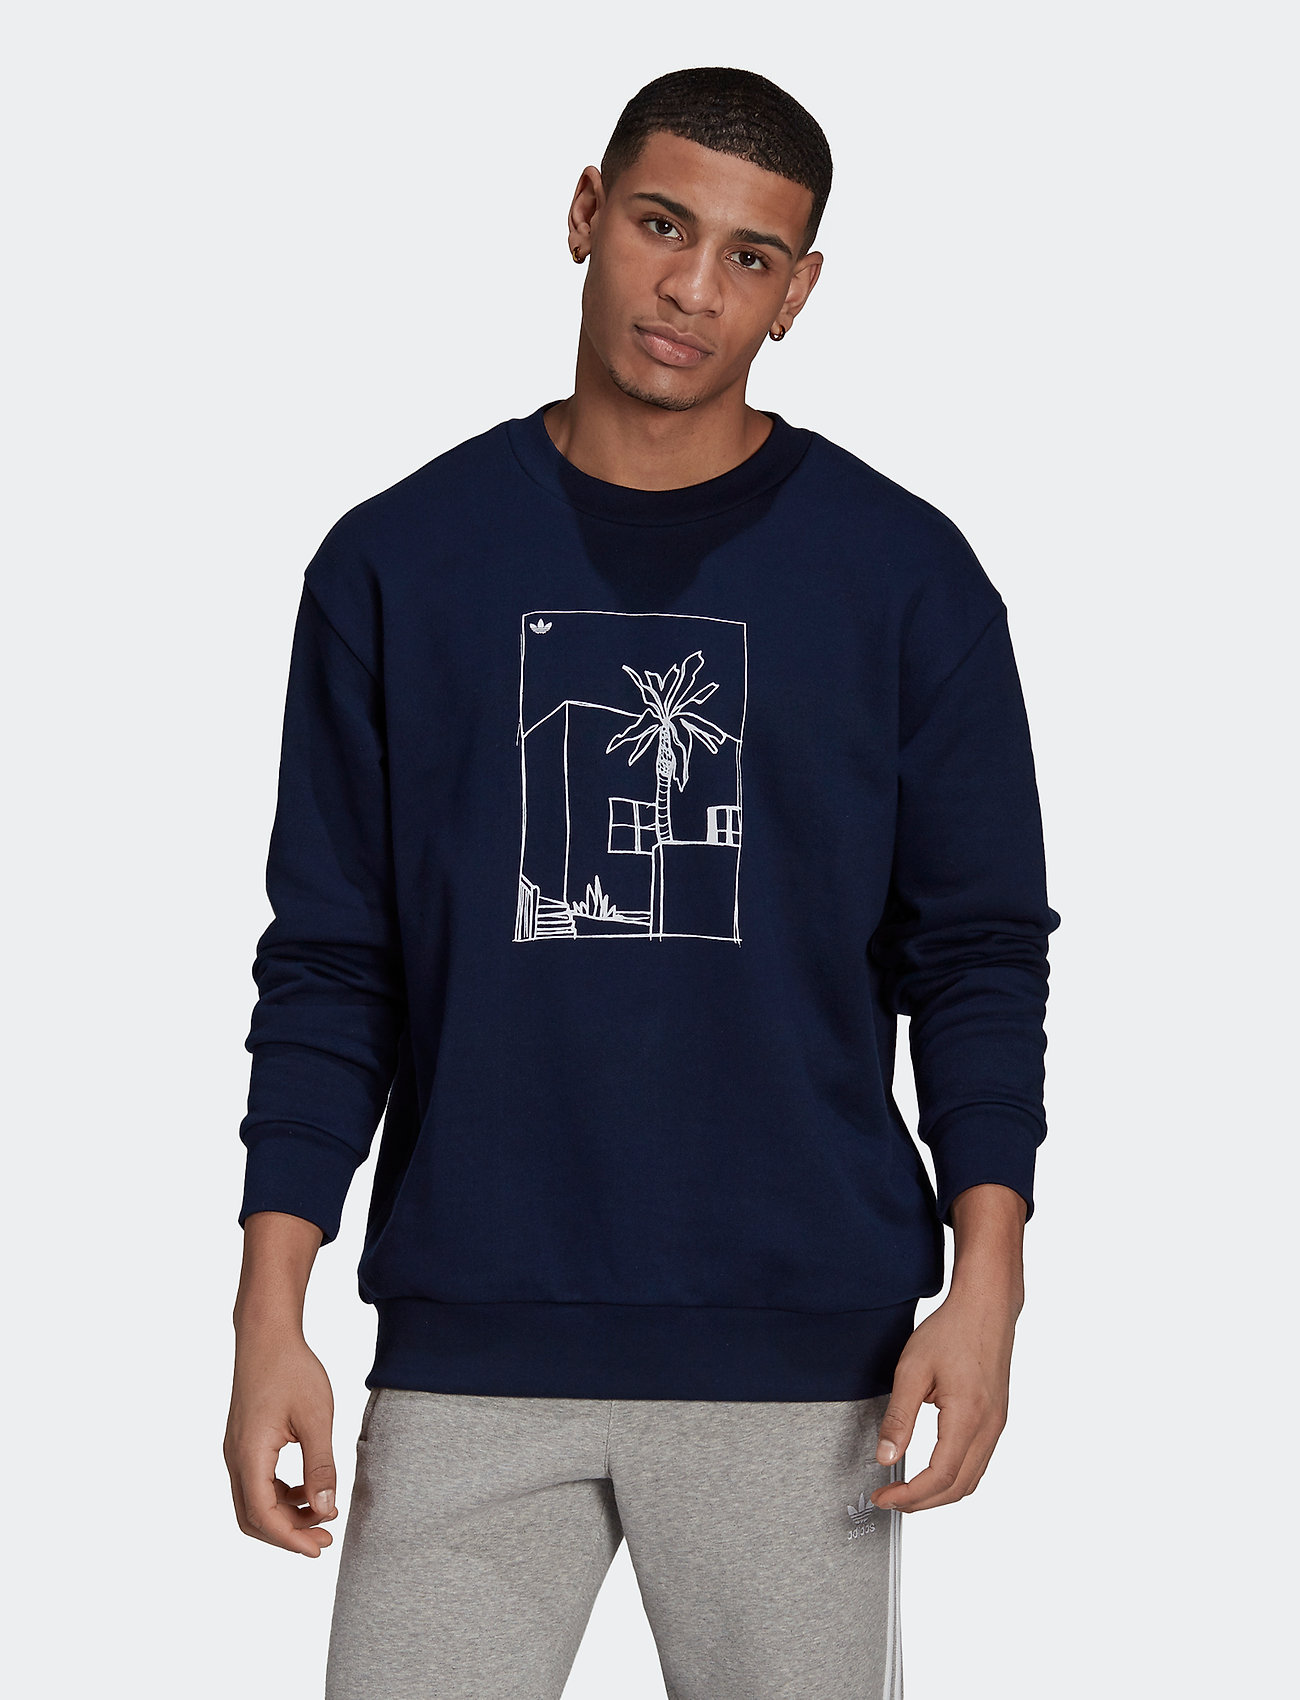 romanforfatter Michelangelo grill adidas Originals Graphic Crewneck Sweatshirt - Sweatshirts | Boozt.com